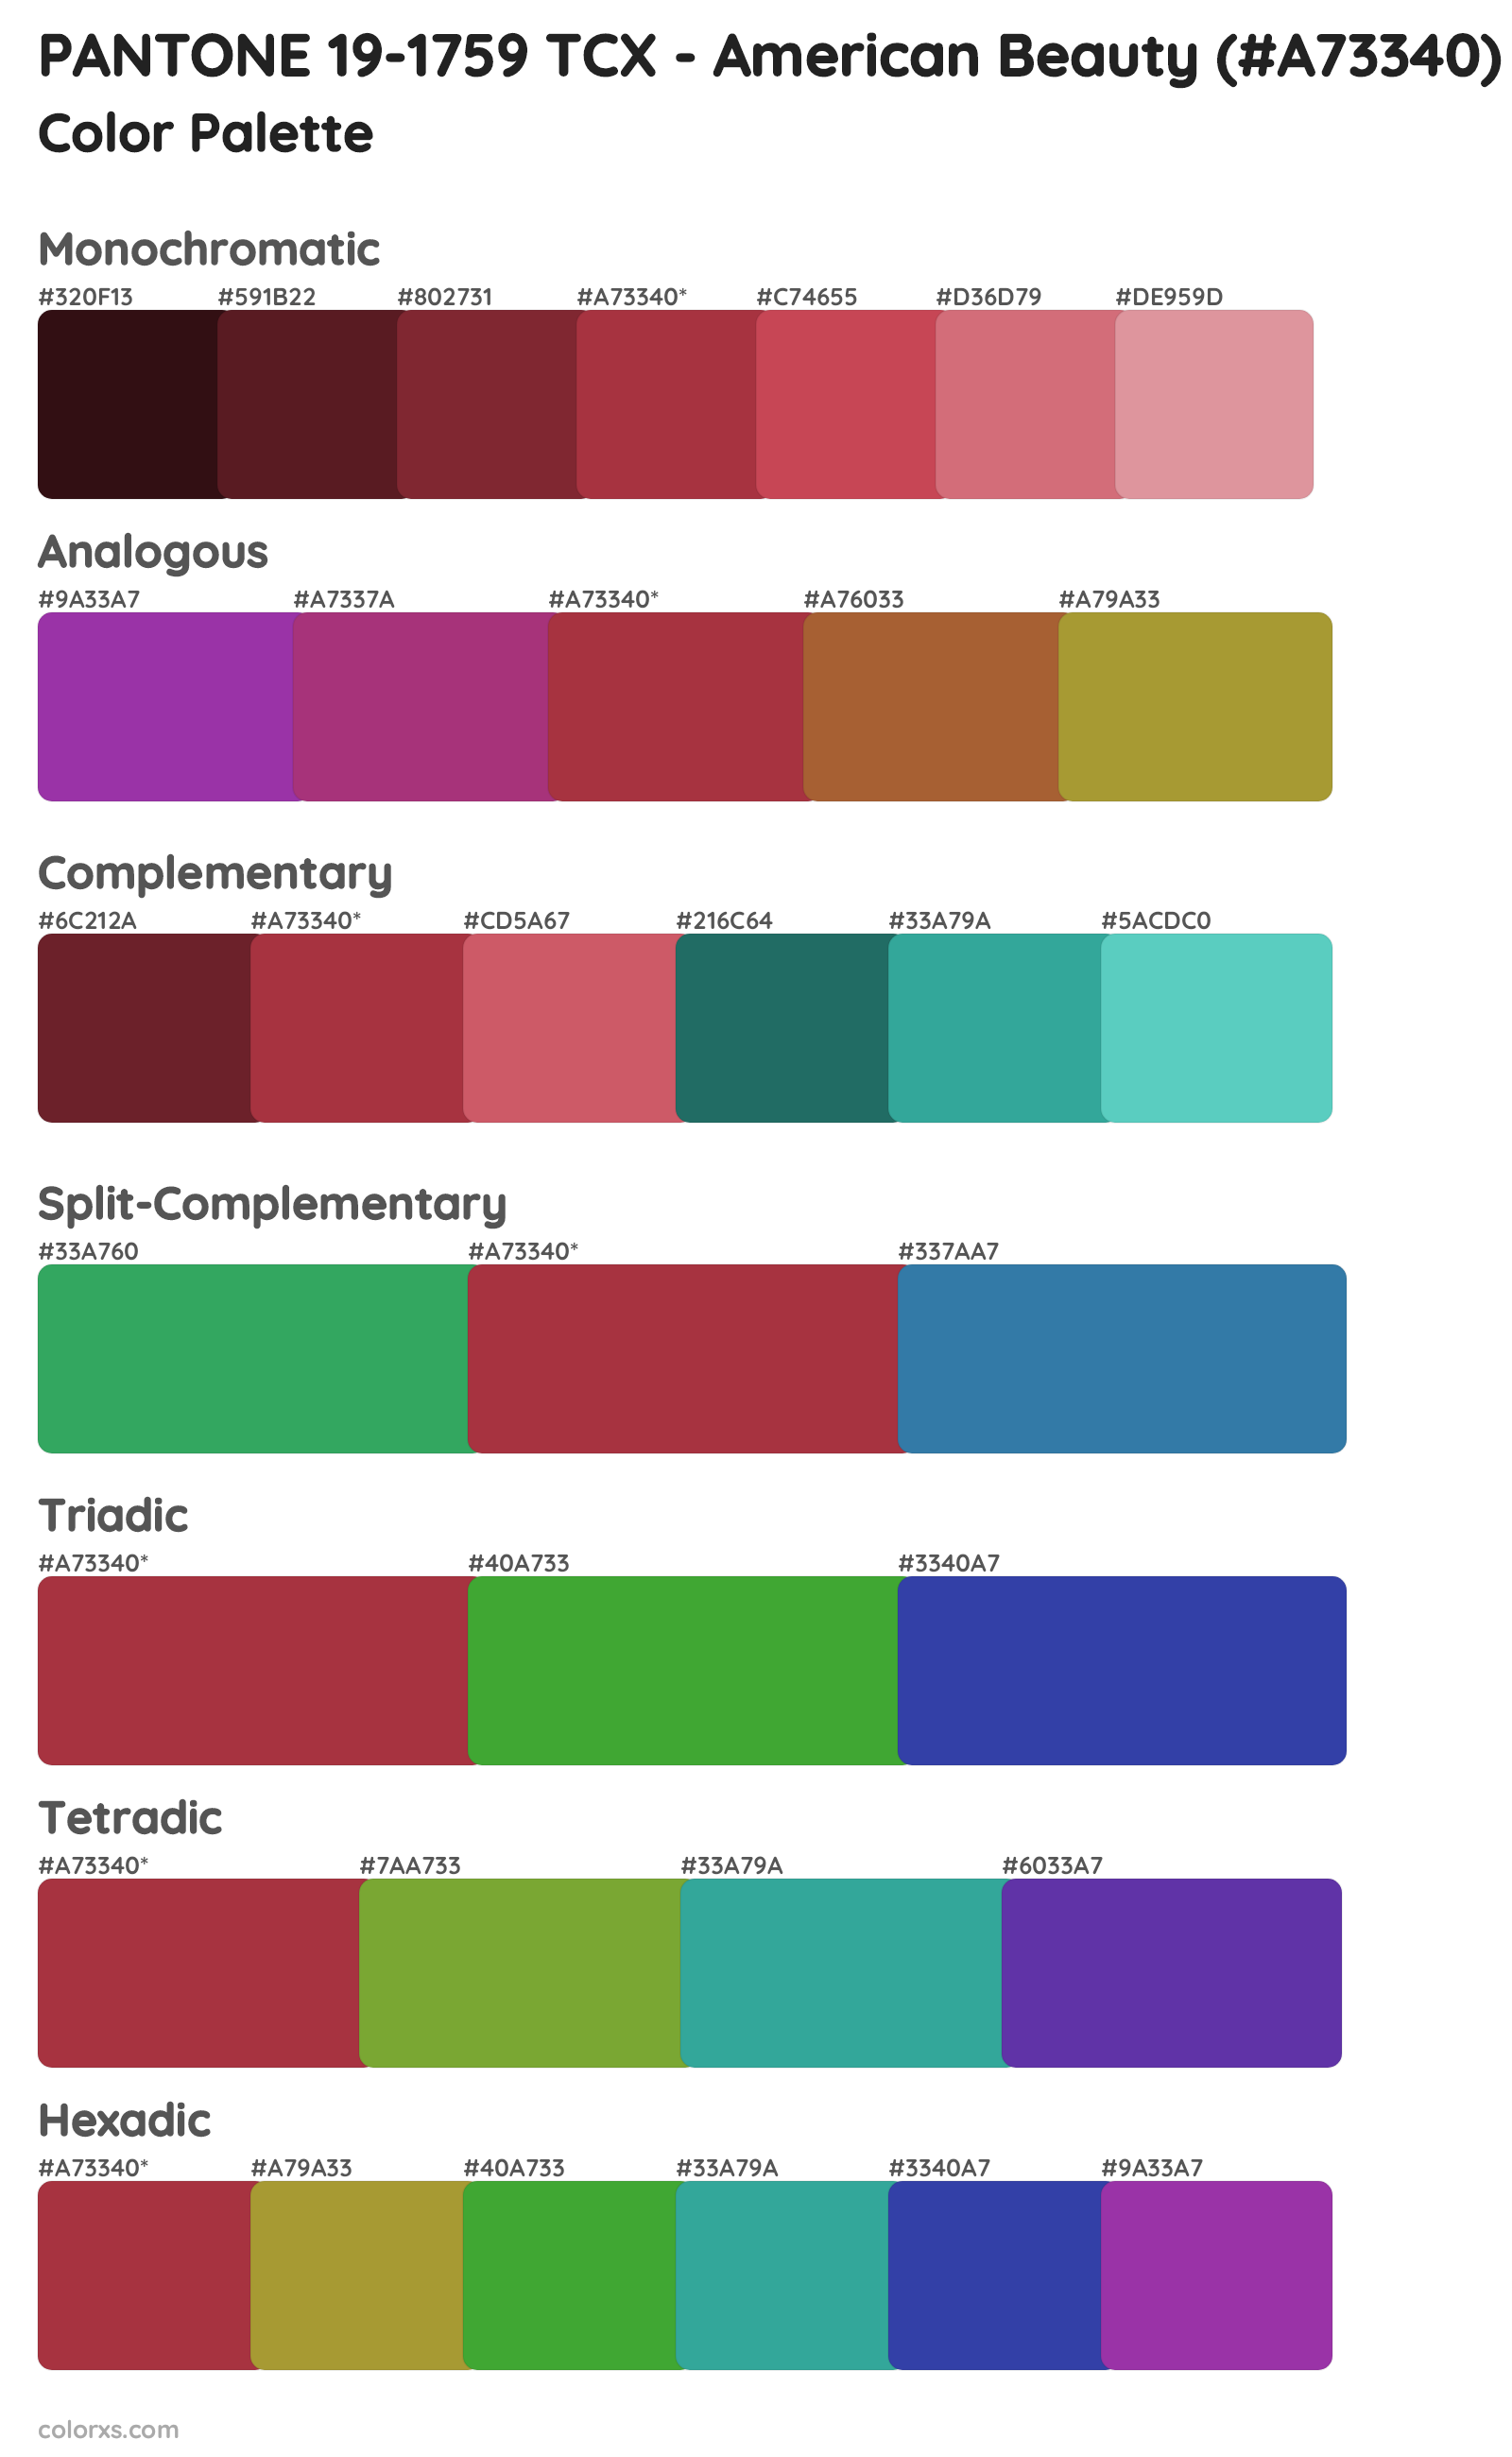 PANTONE 19-1759 TCX - American Beauty Color Scheme Palettes